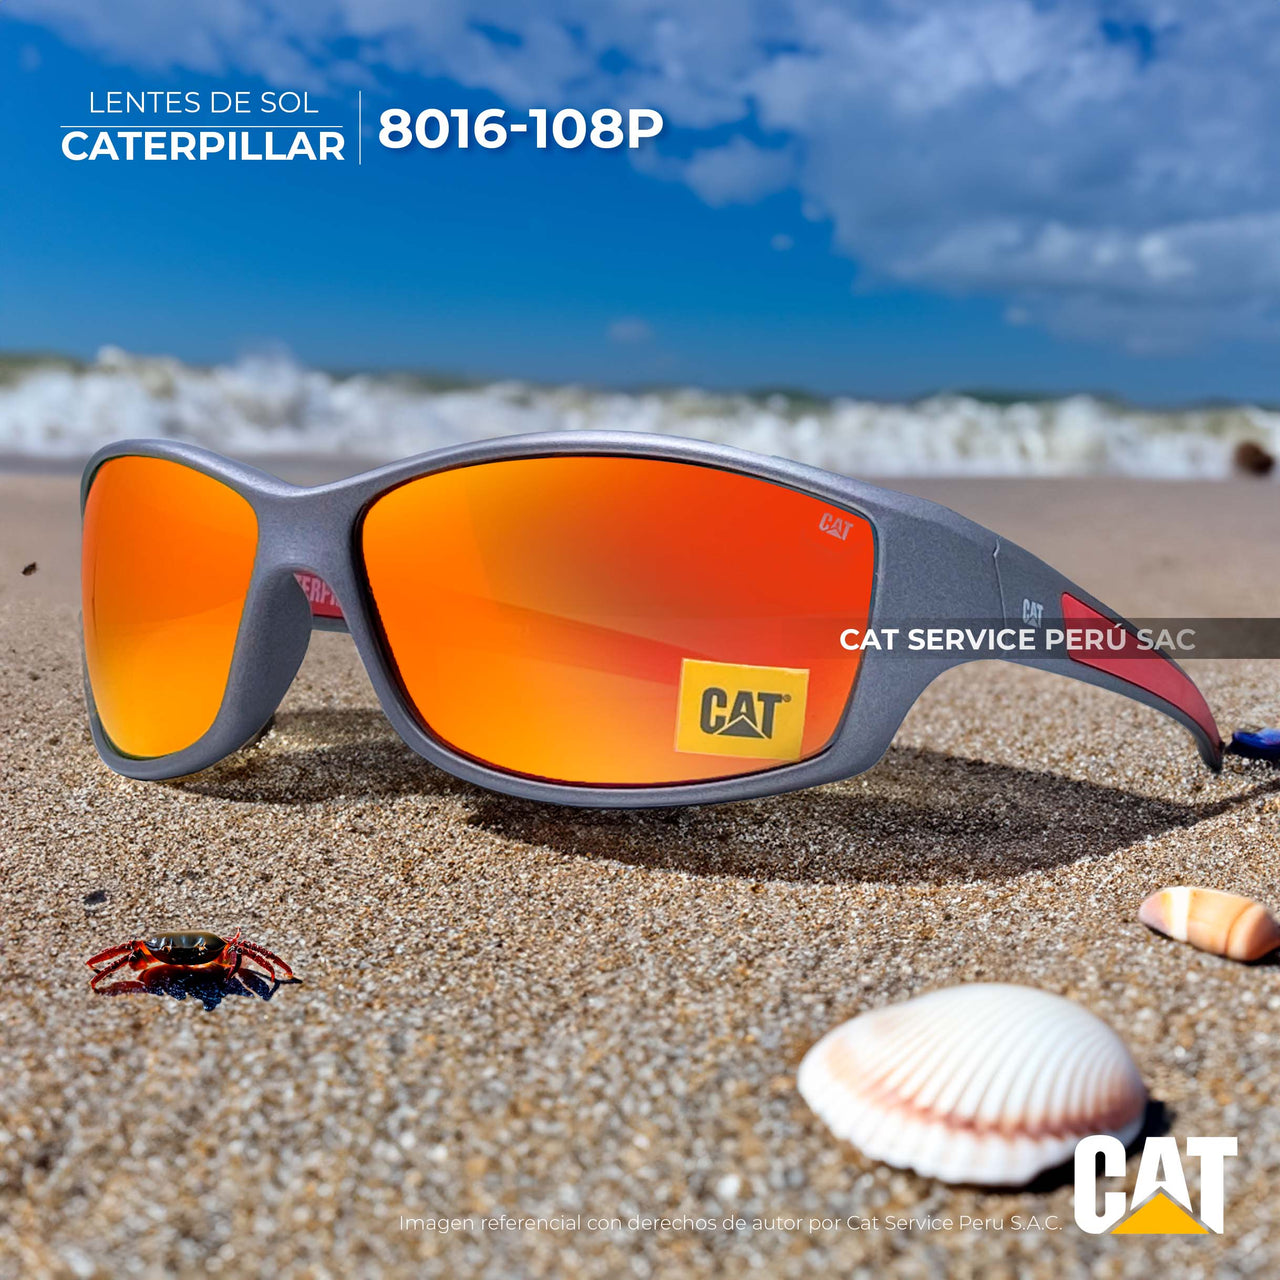 कैट सीपीएस-8016-108पी पोलराइज्ड रेड मून्स धूप का चश्मा 